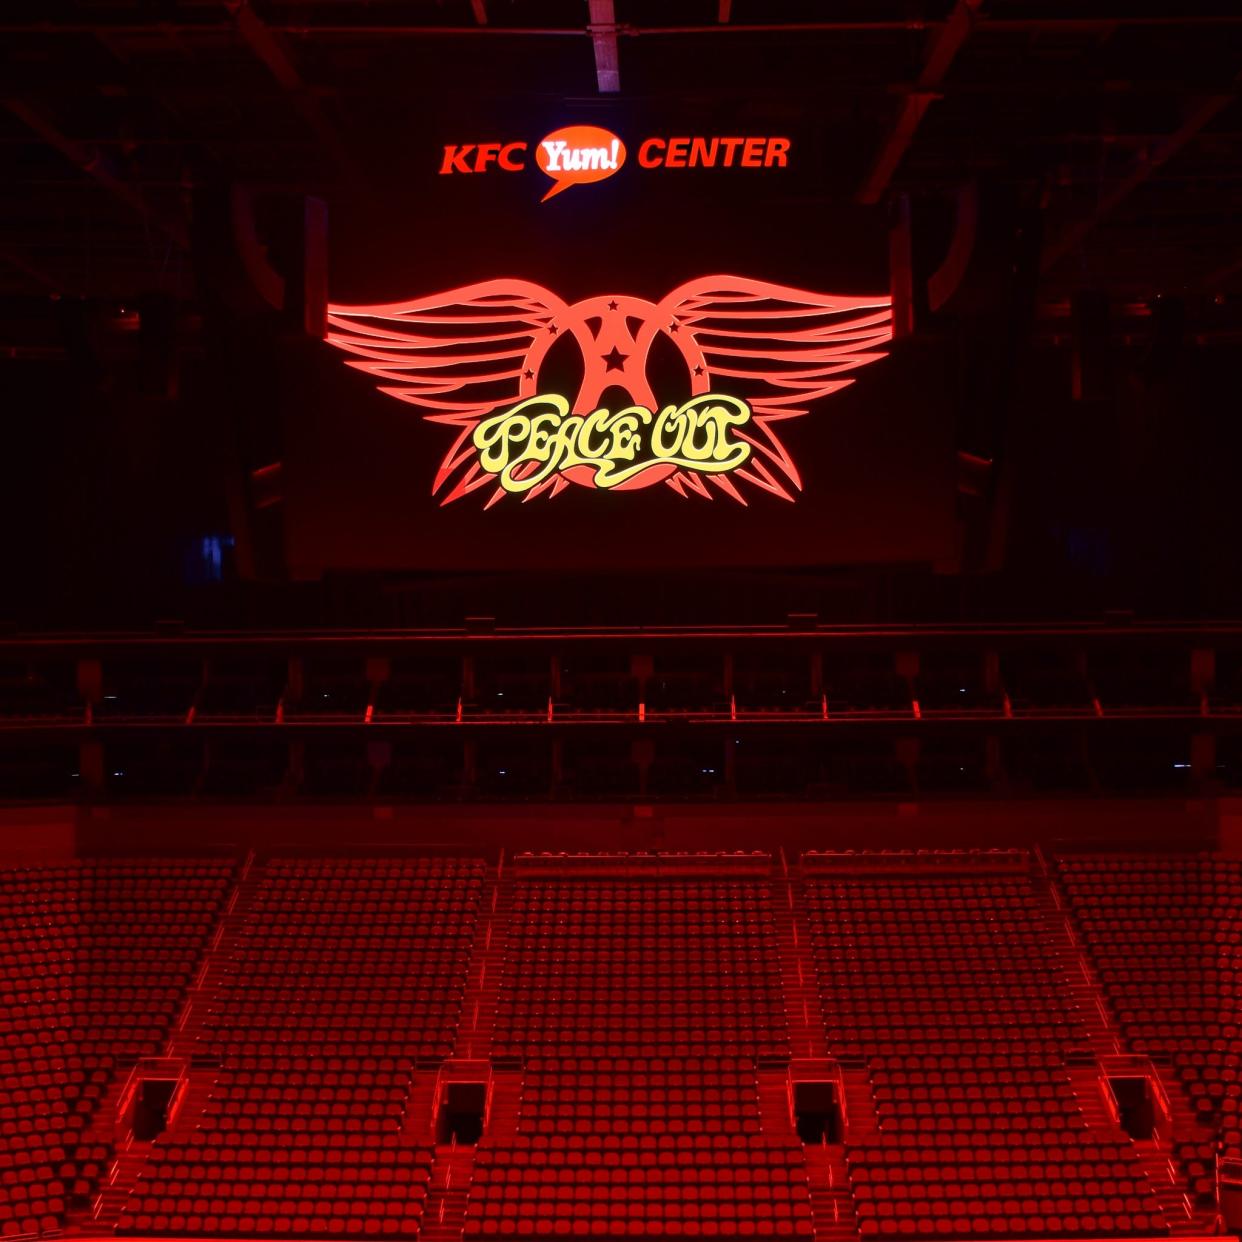 KFC Yum Center social media page hint at an upcoming Aerosmith concert